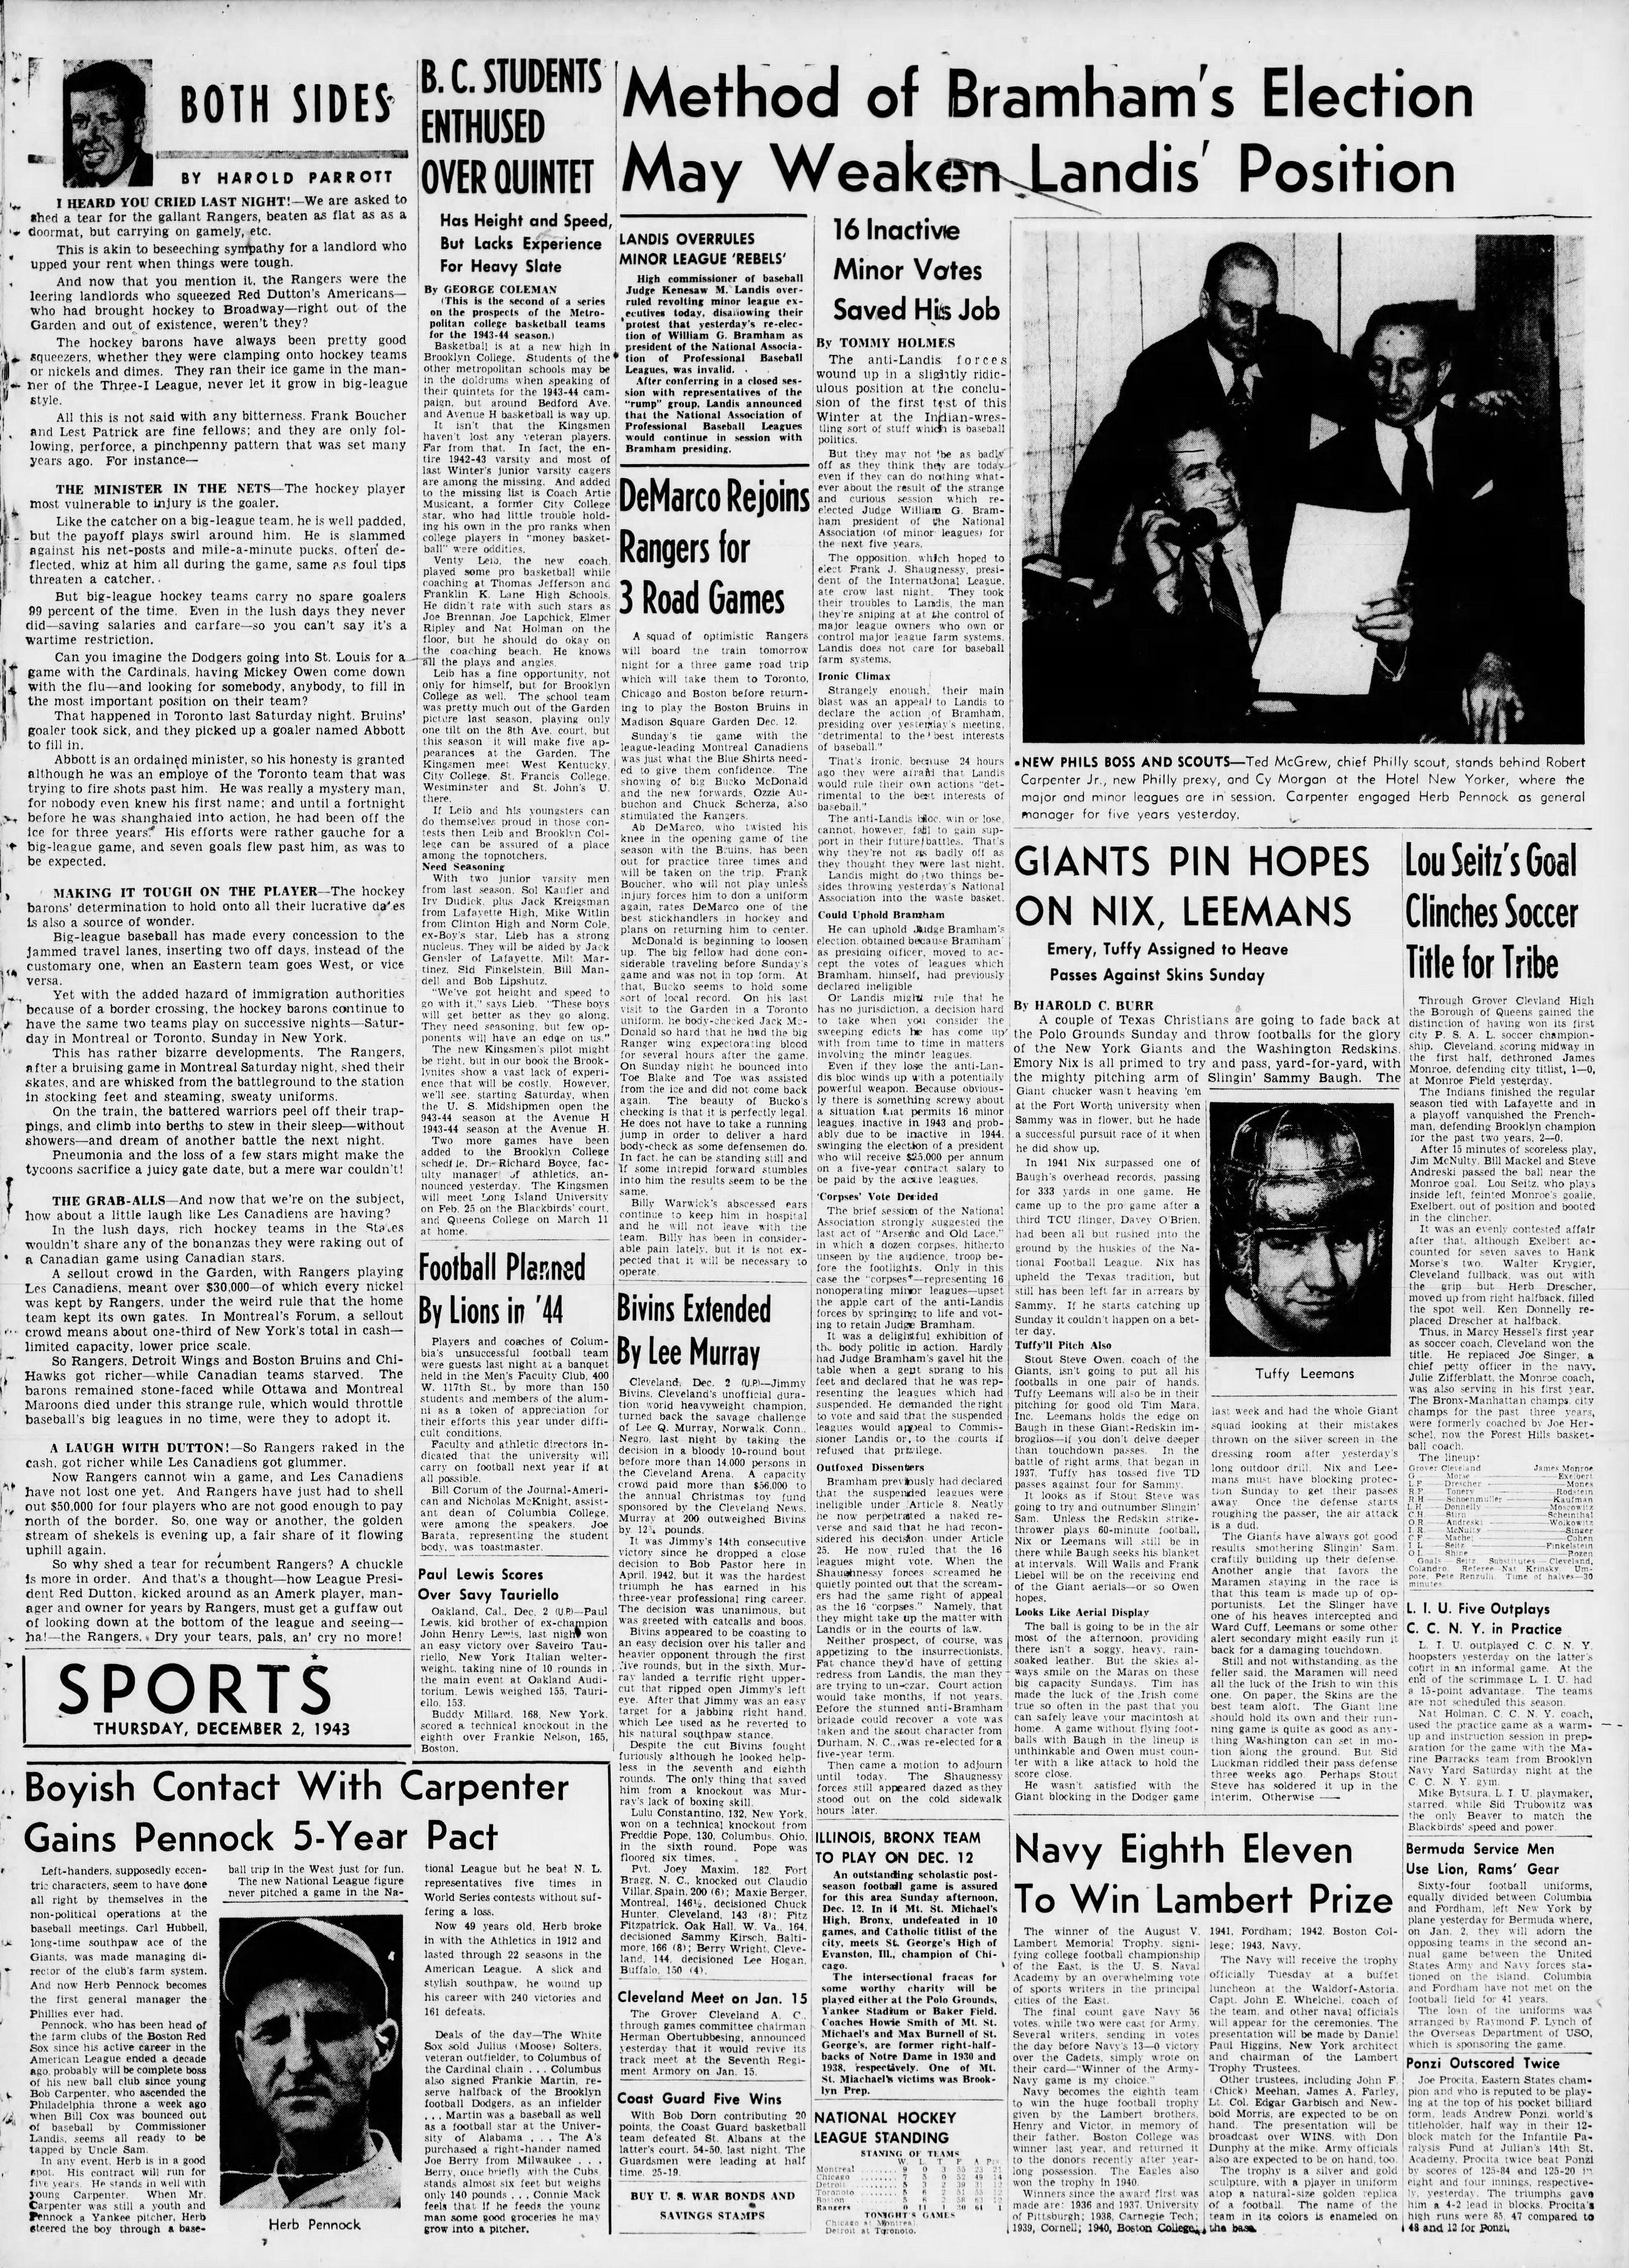 The_Brooklyn_Daily_Eagle_Thu__Dec_2__1943_(6).jpg